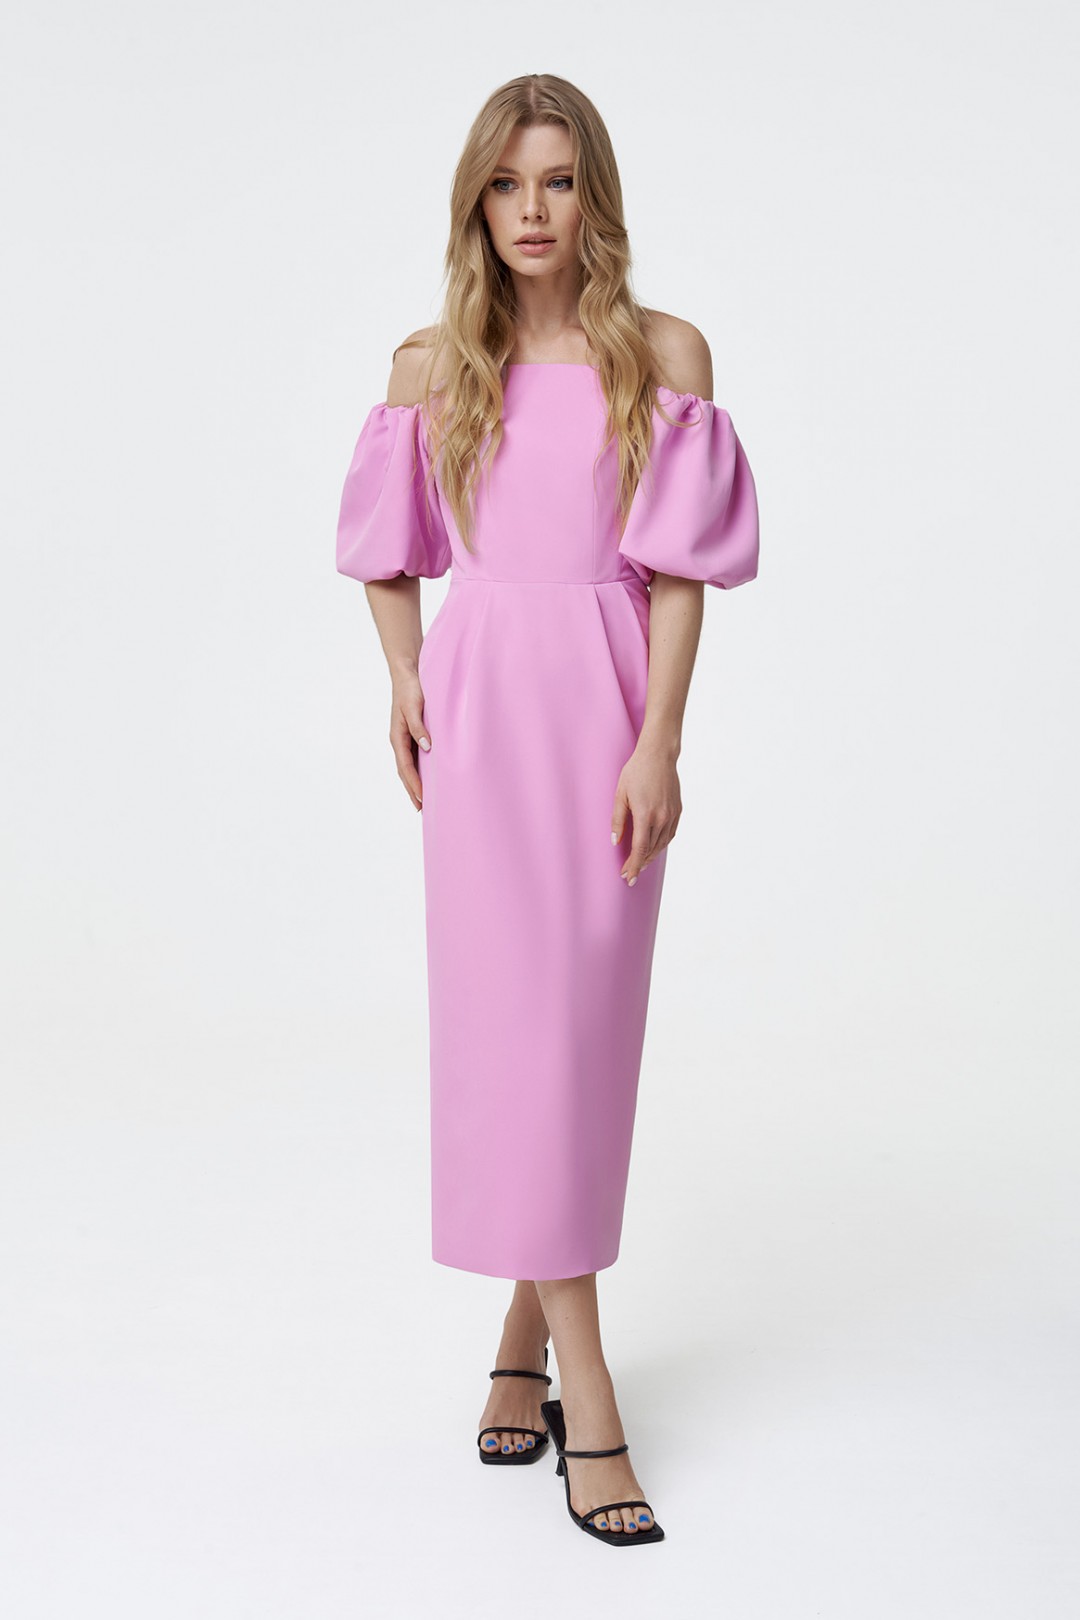 Платье Pirs 2247 розовый